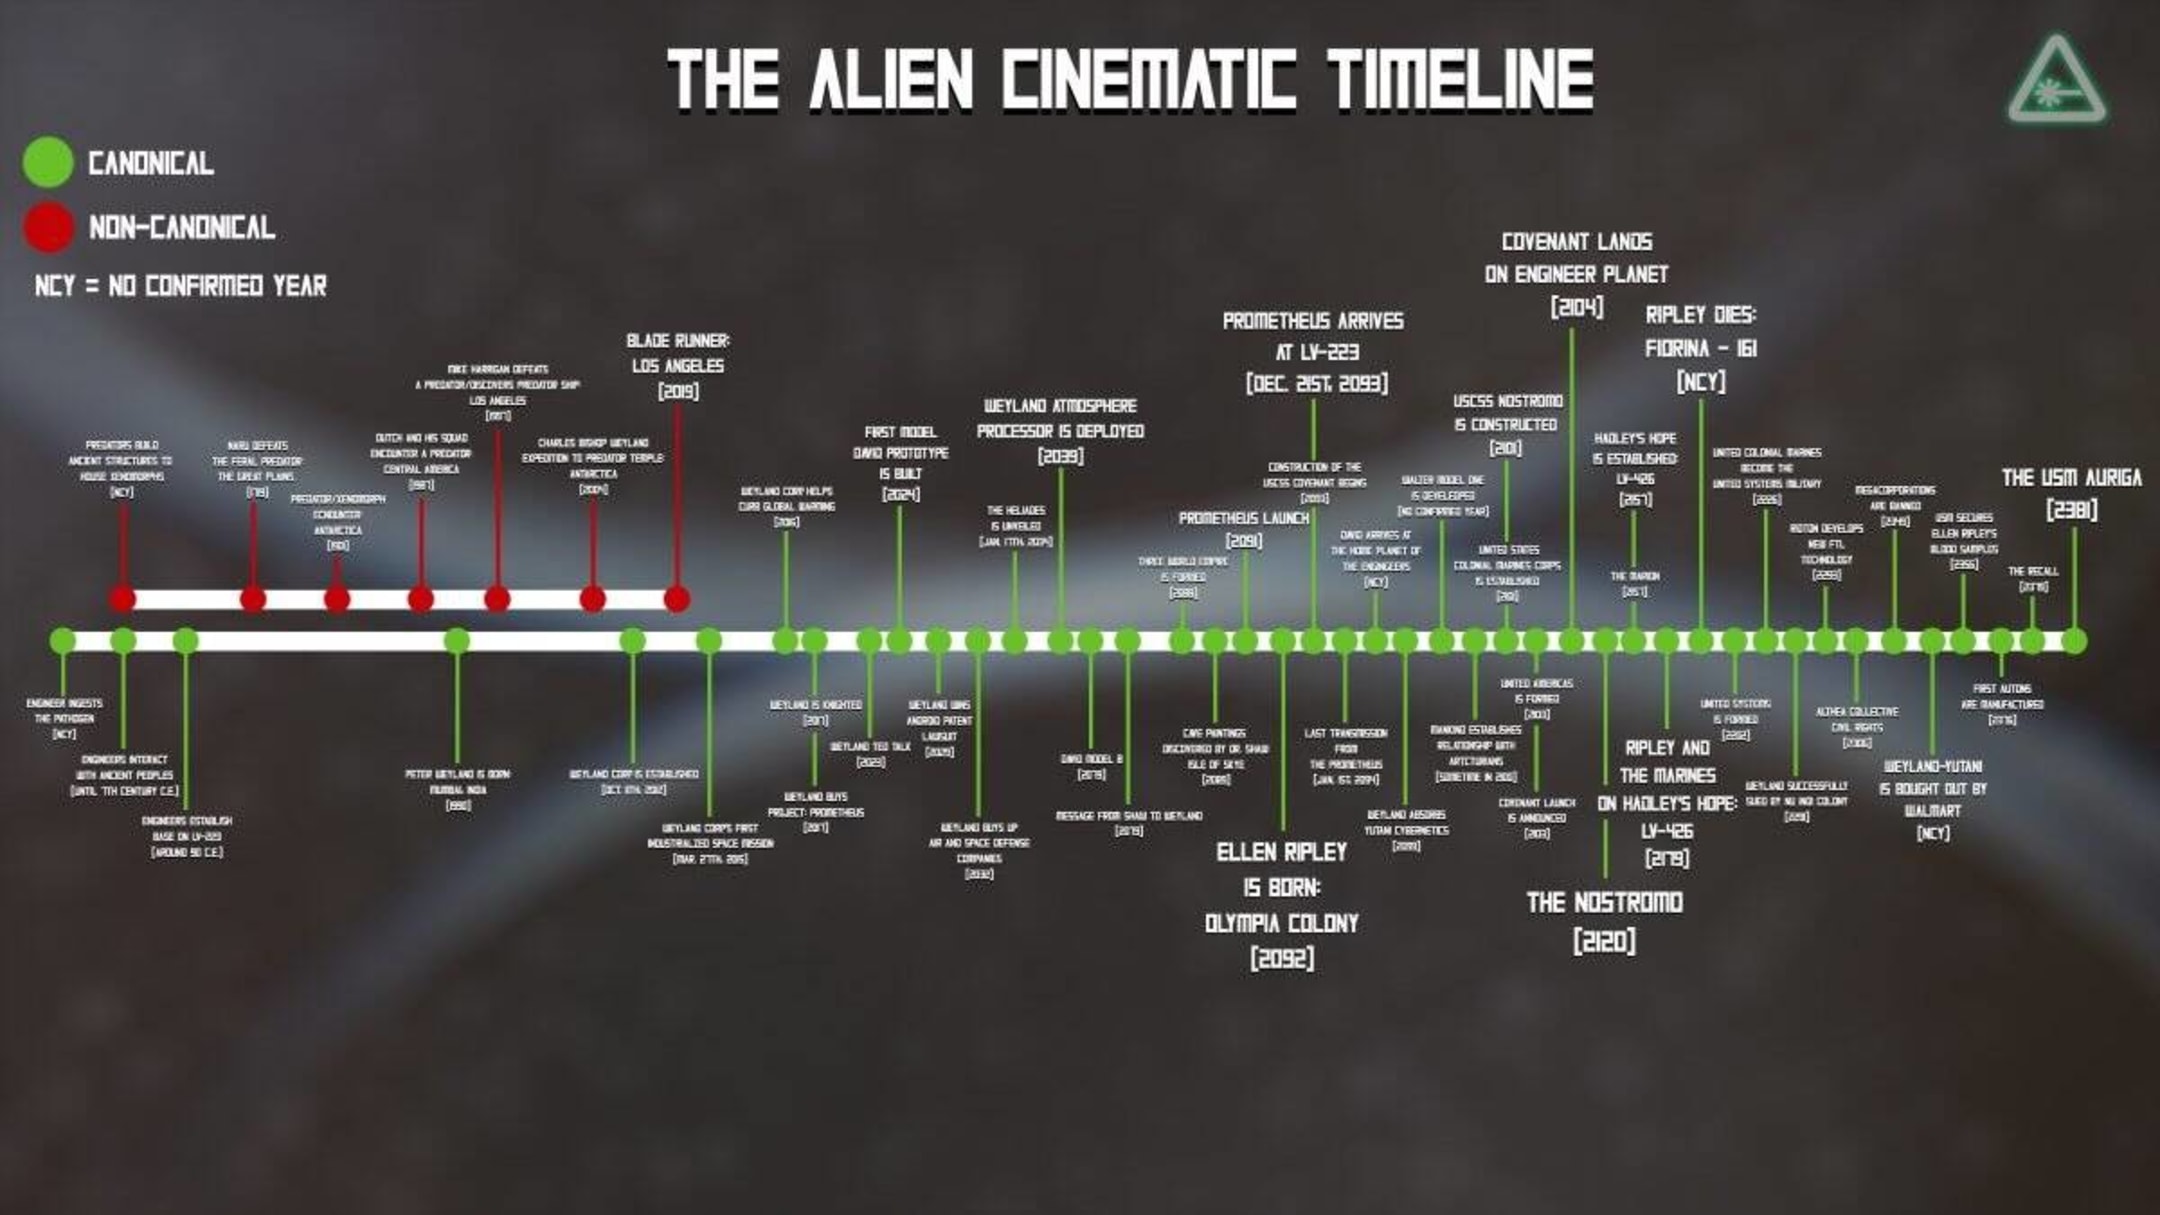 AG MEDIA NEWS on X: Top 4 Timeline Explained In #Hindi The Conjuring  Timeline :-  Alien Predator Timeline :-   Star Wars Timeline :-  X-MEN  Timeline :-  https